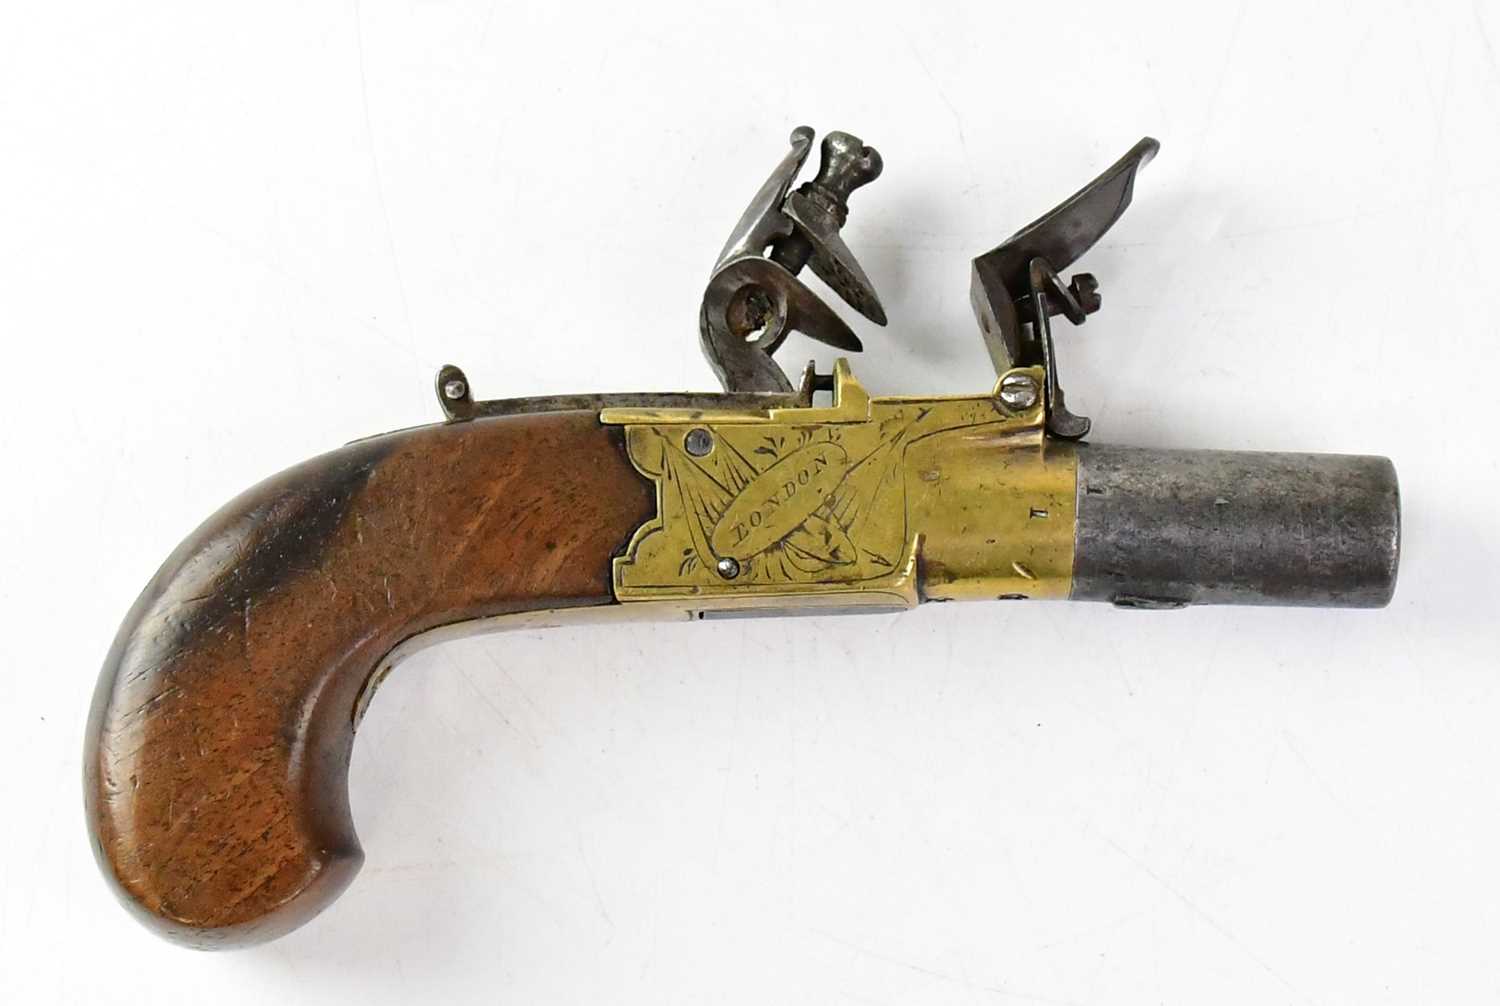 ANDERSON, LONDON; an early 19th century 40 bore flintlock pocket pistol, 1.5" turn-off barrel, brass